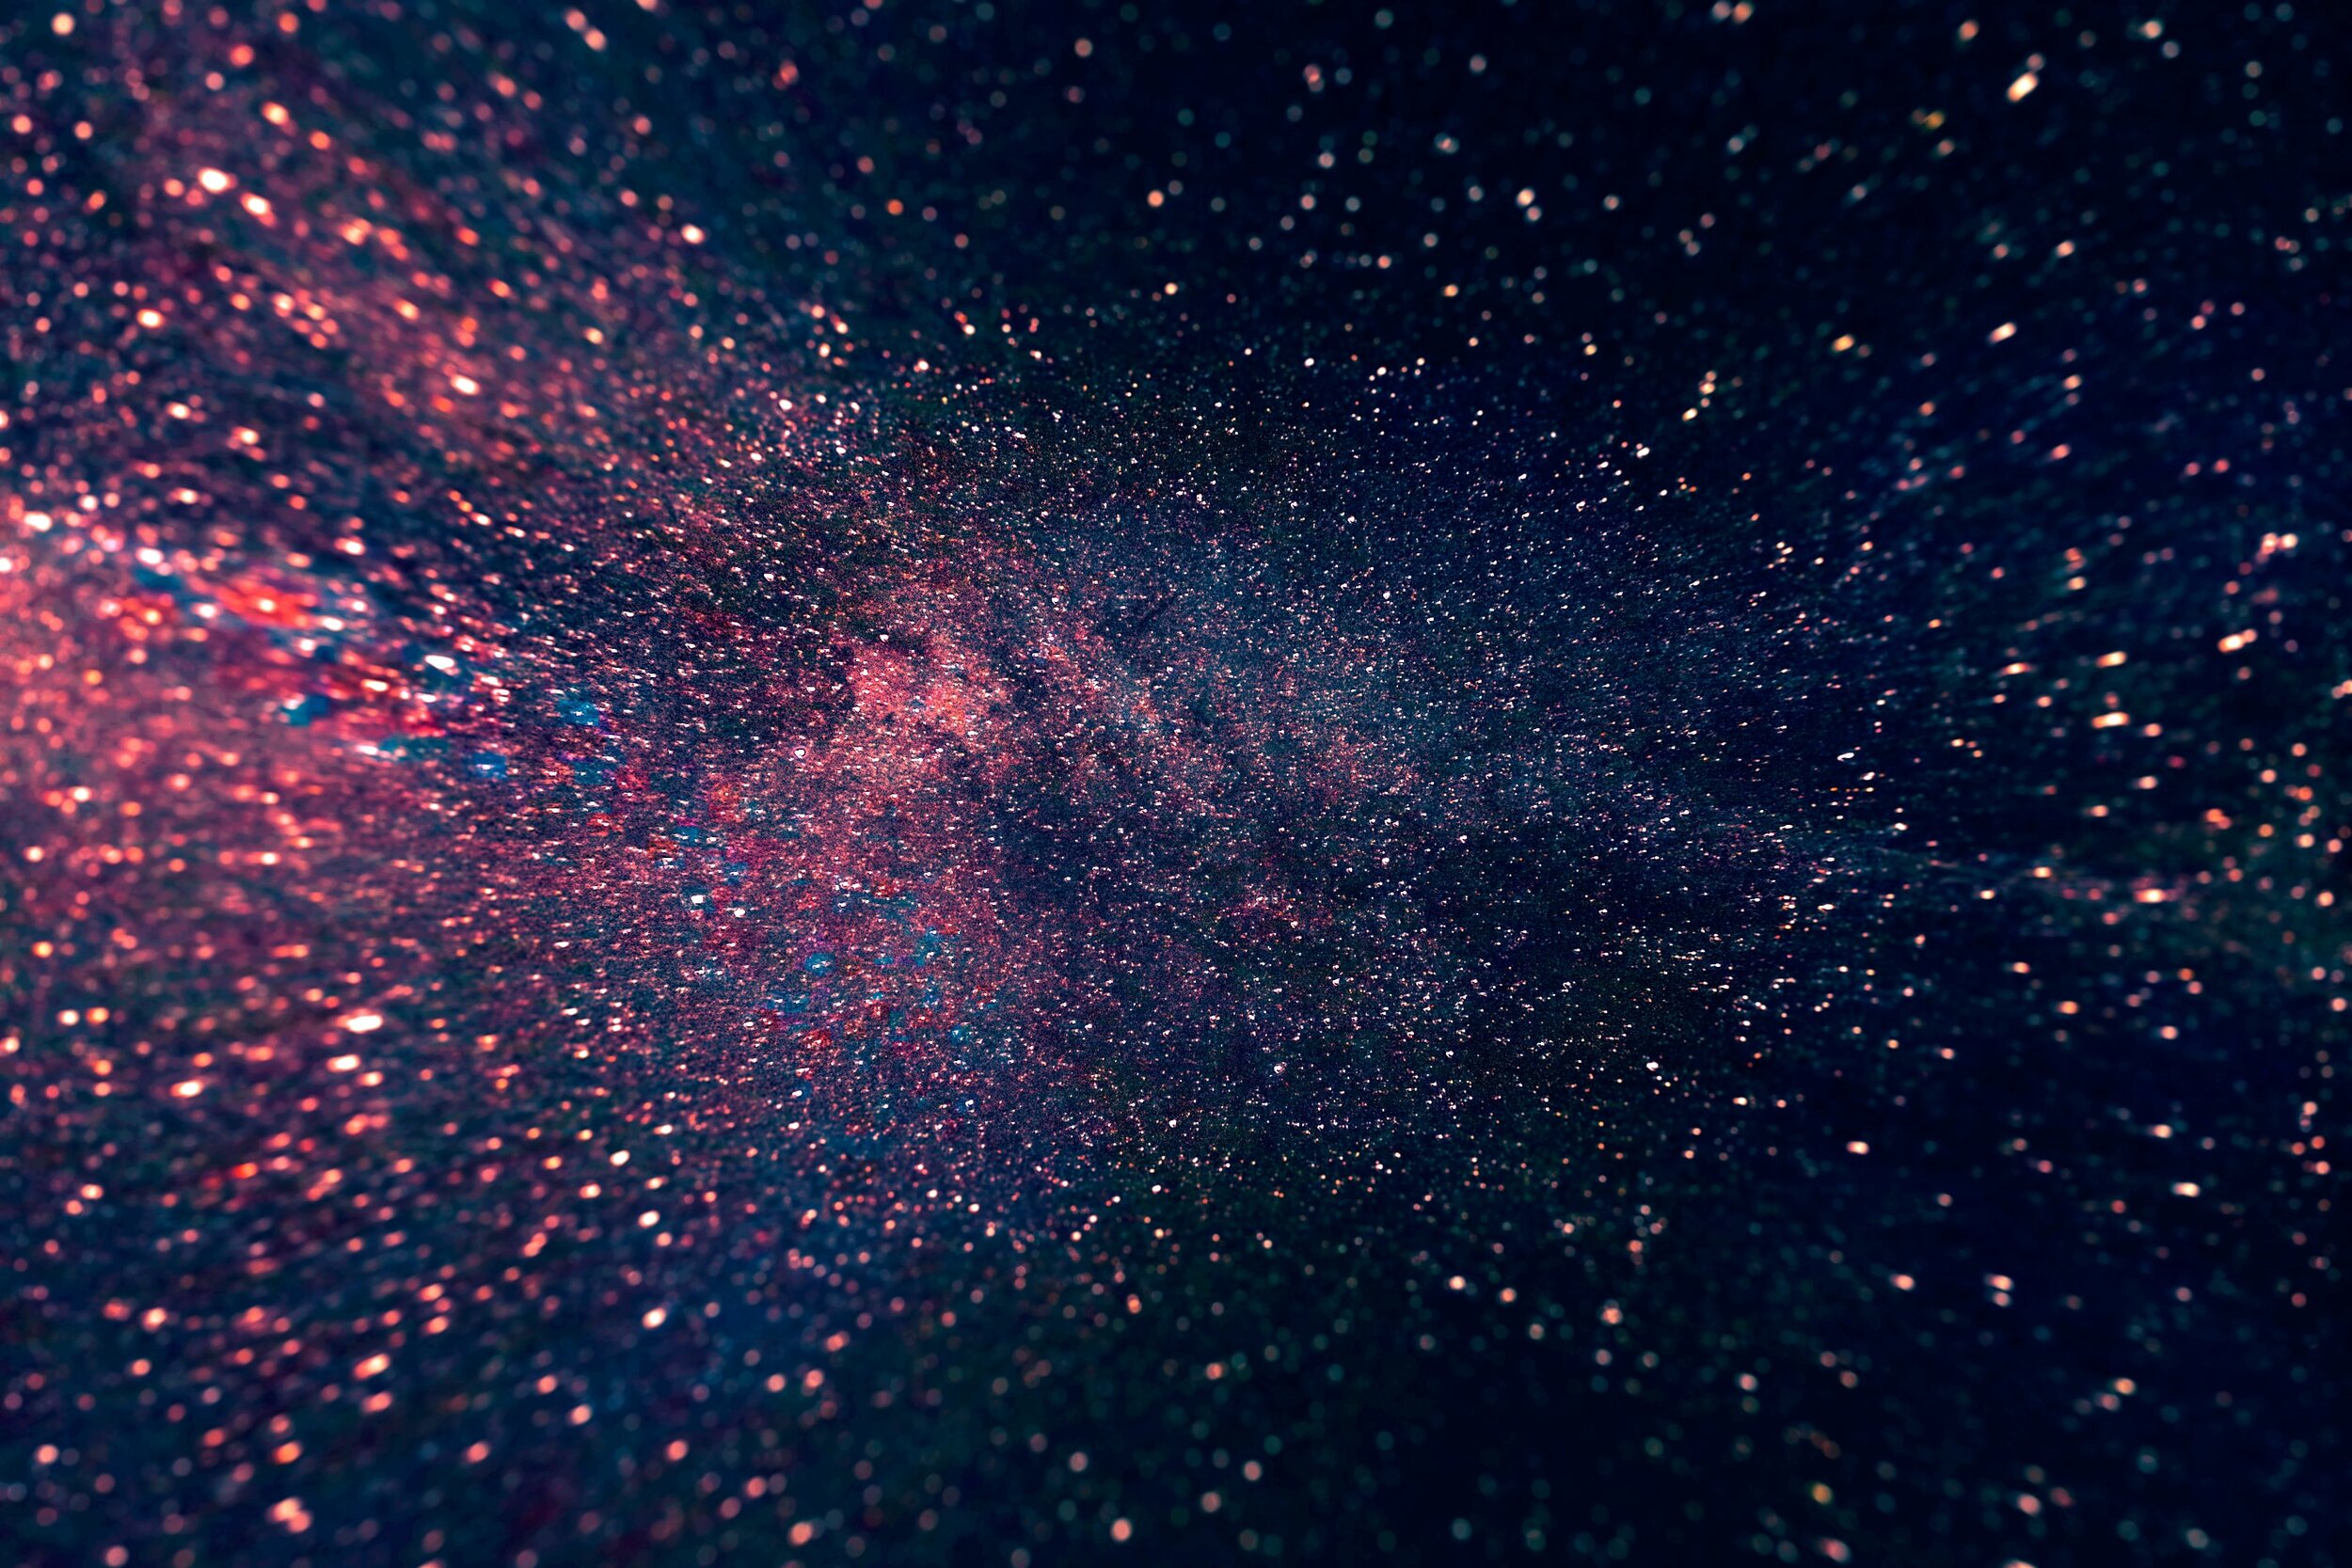 A galaxy full of stars